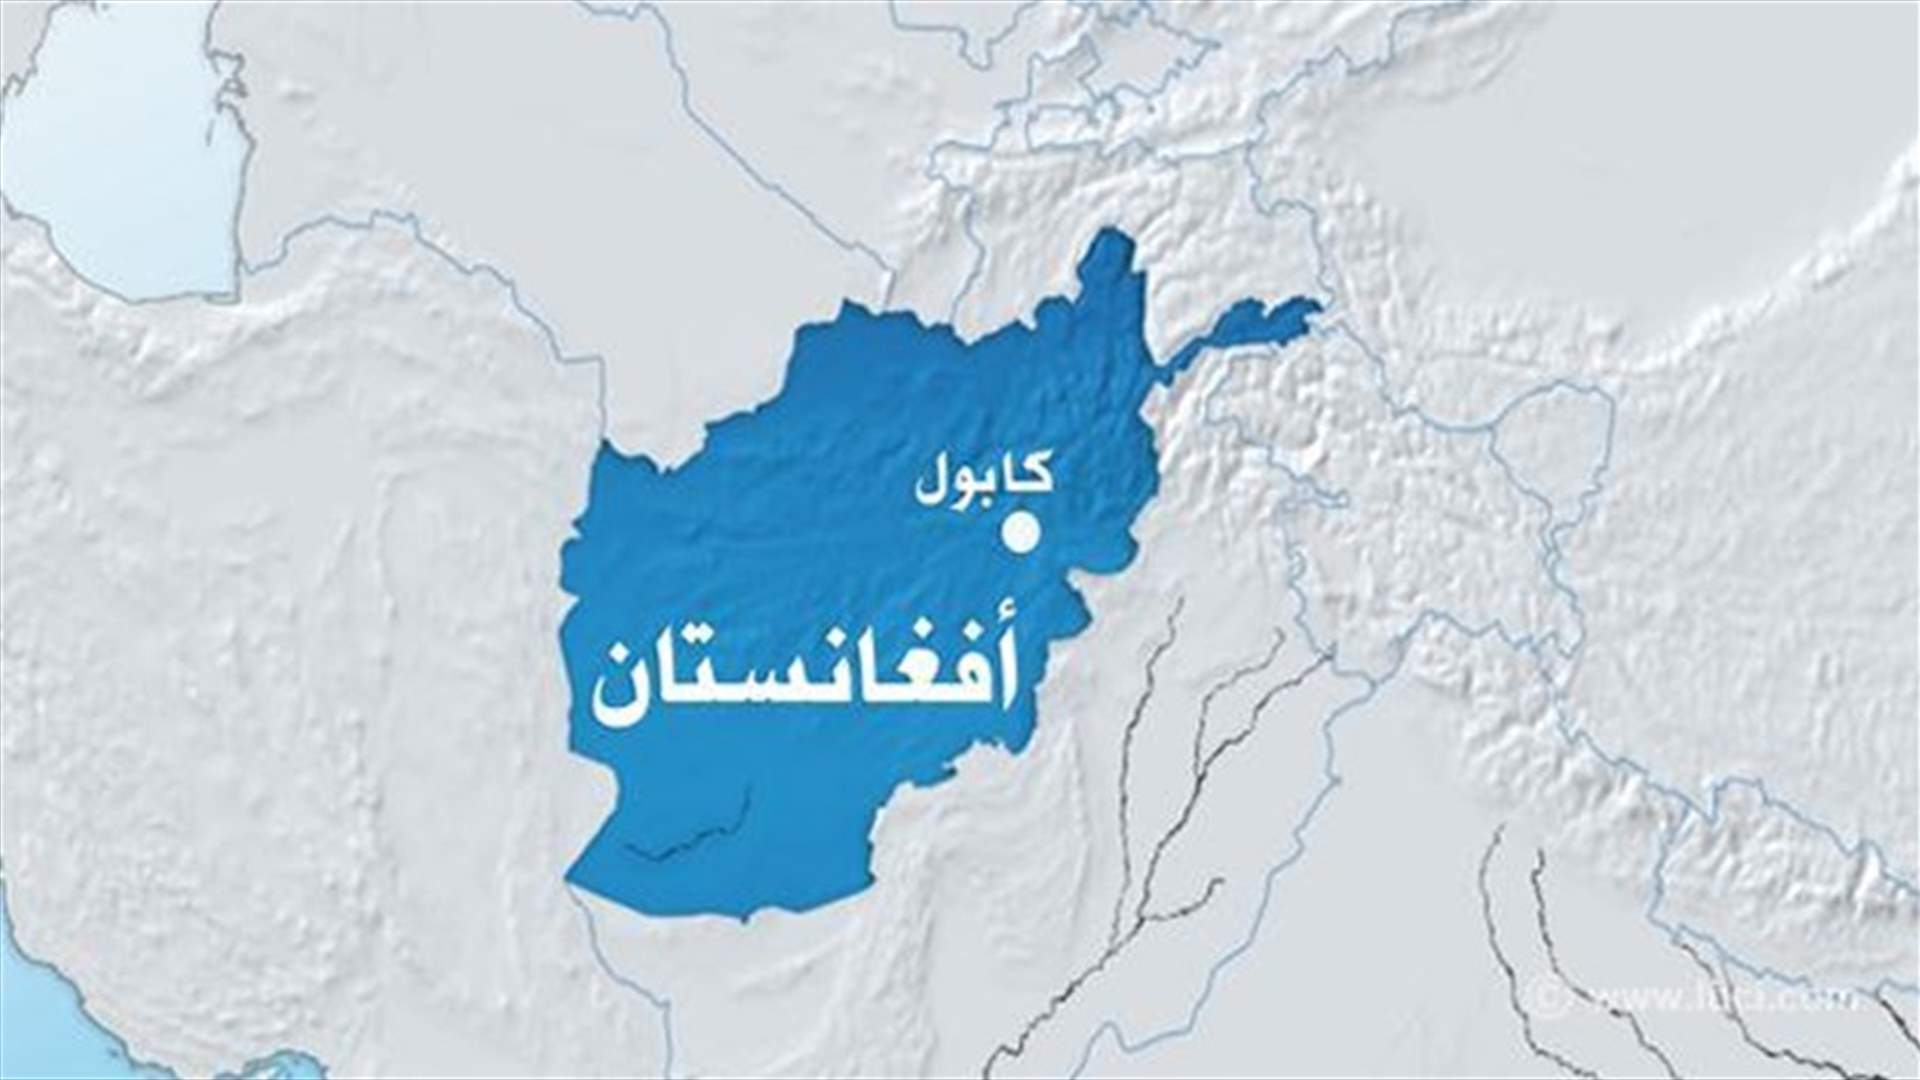 9 قتلى في هجوم انتحاري خلال جنازة في شرق افغانستان